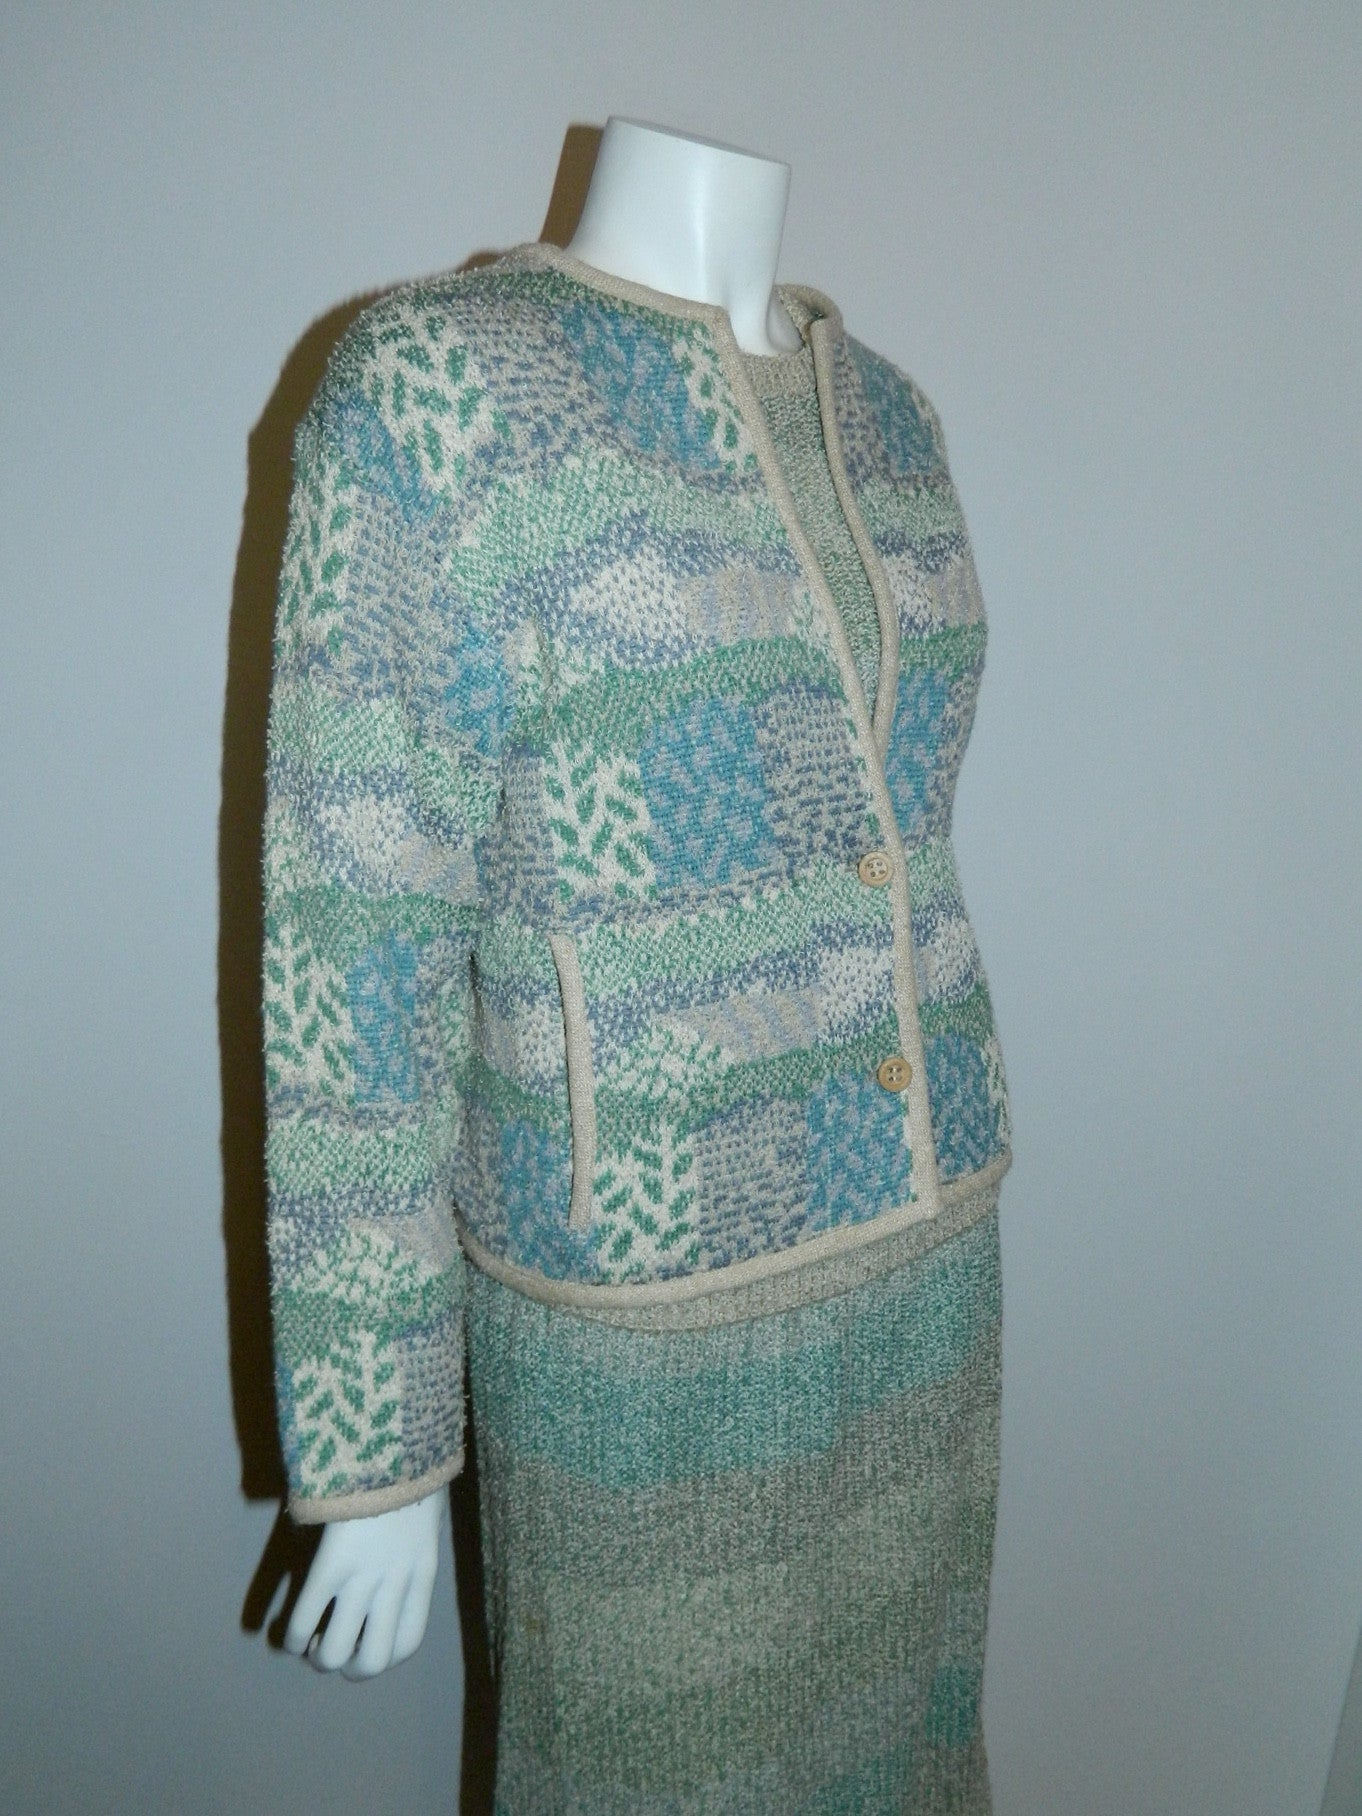 vintage MISSONI knit suit / 1980s pencil skirt sweater cardigan jacket / boucle weave S